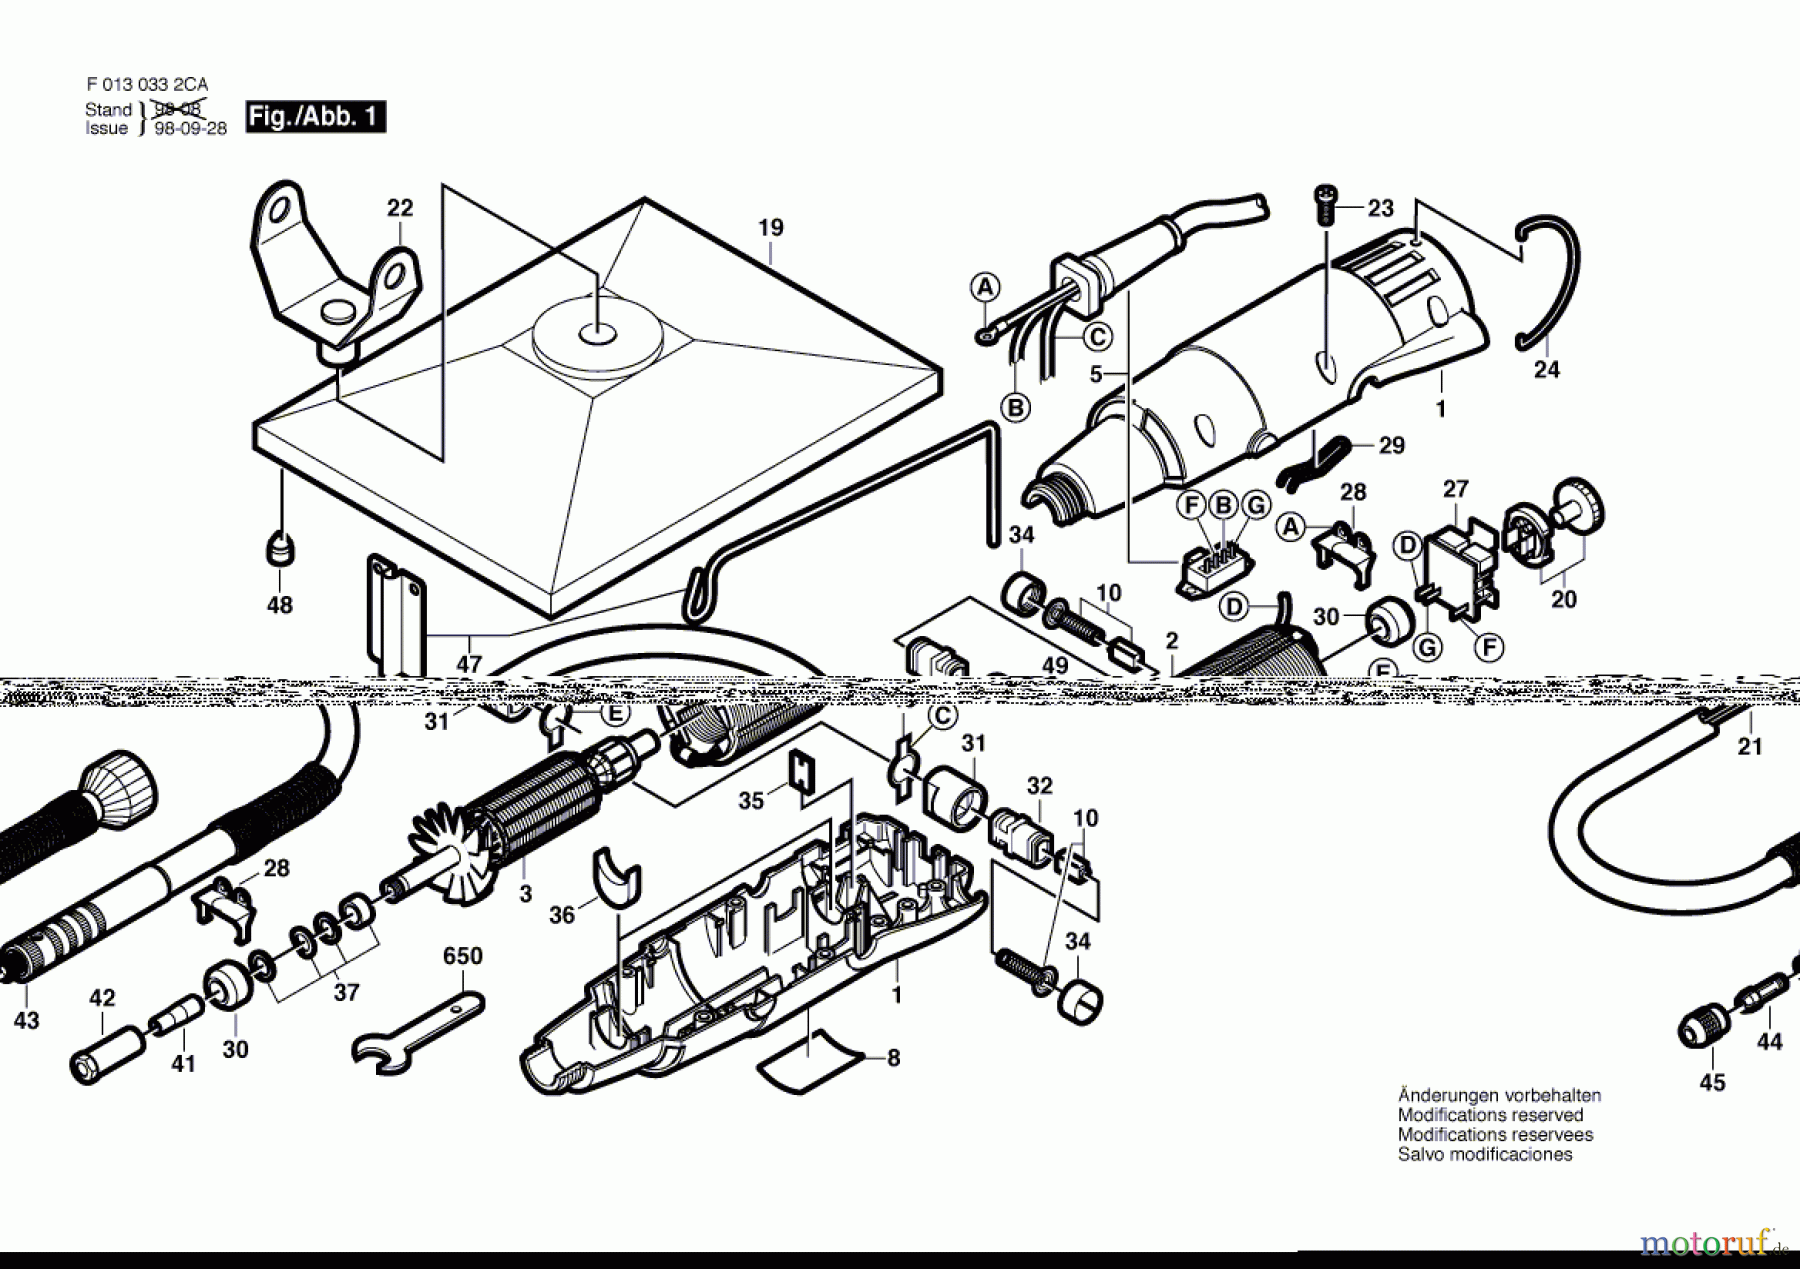  Bosch Werkzeug SCHLEIFSCHAFTWERKZEUG 332 Seite 1